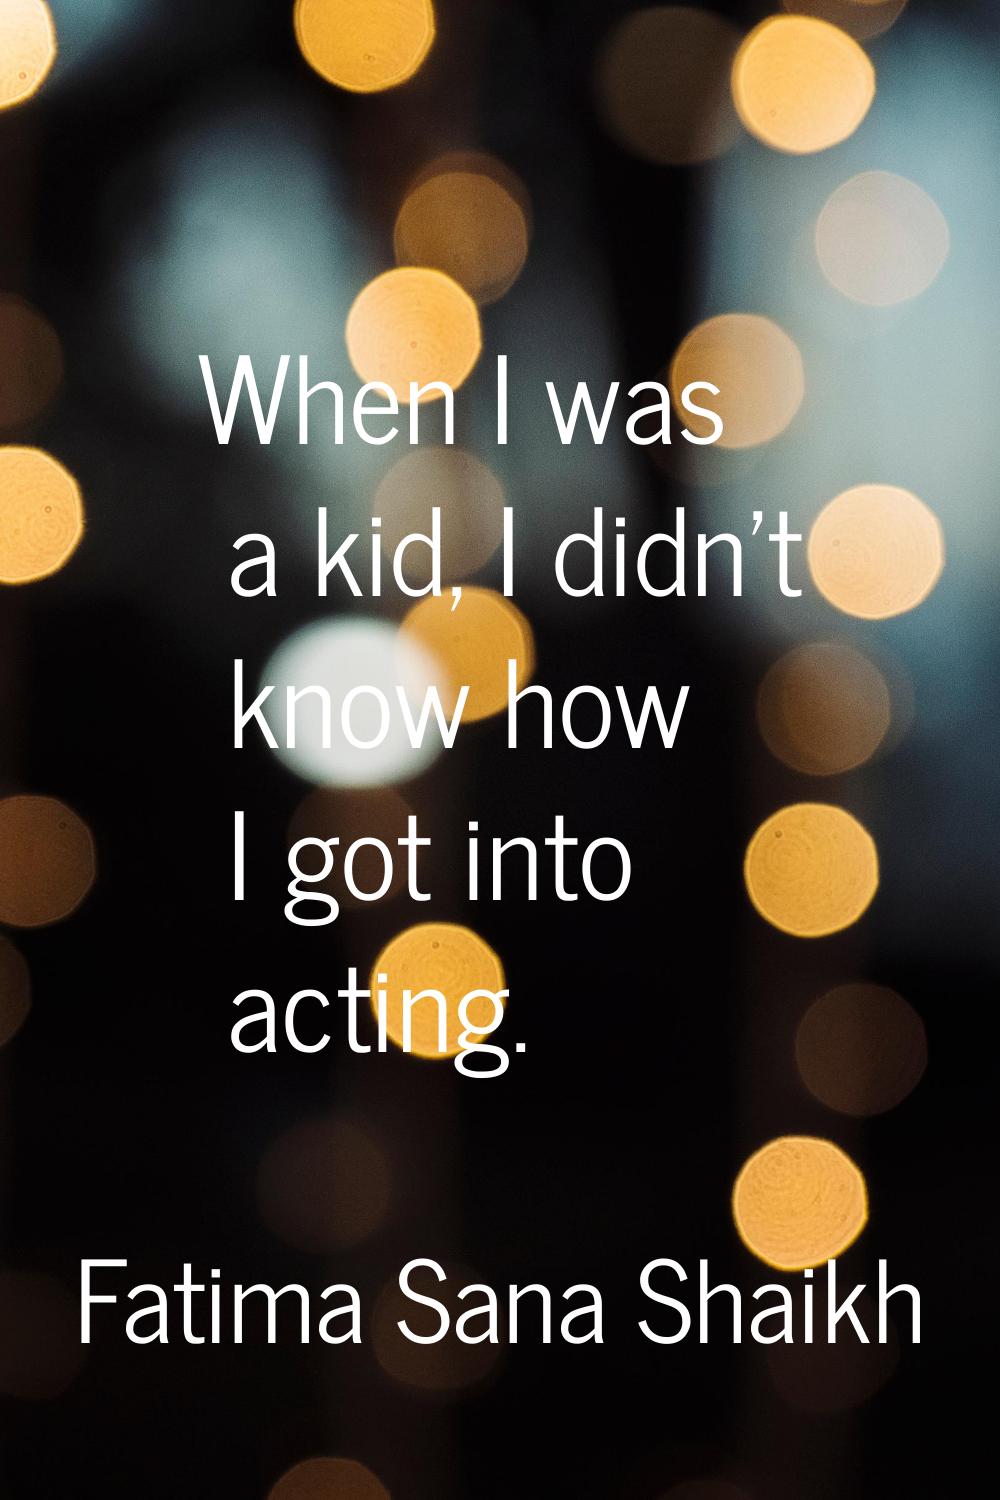 When I was a kid, I didn't know how I got into acting.